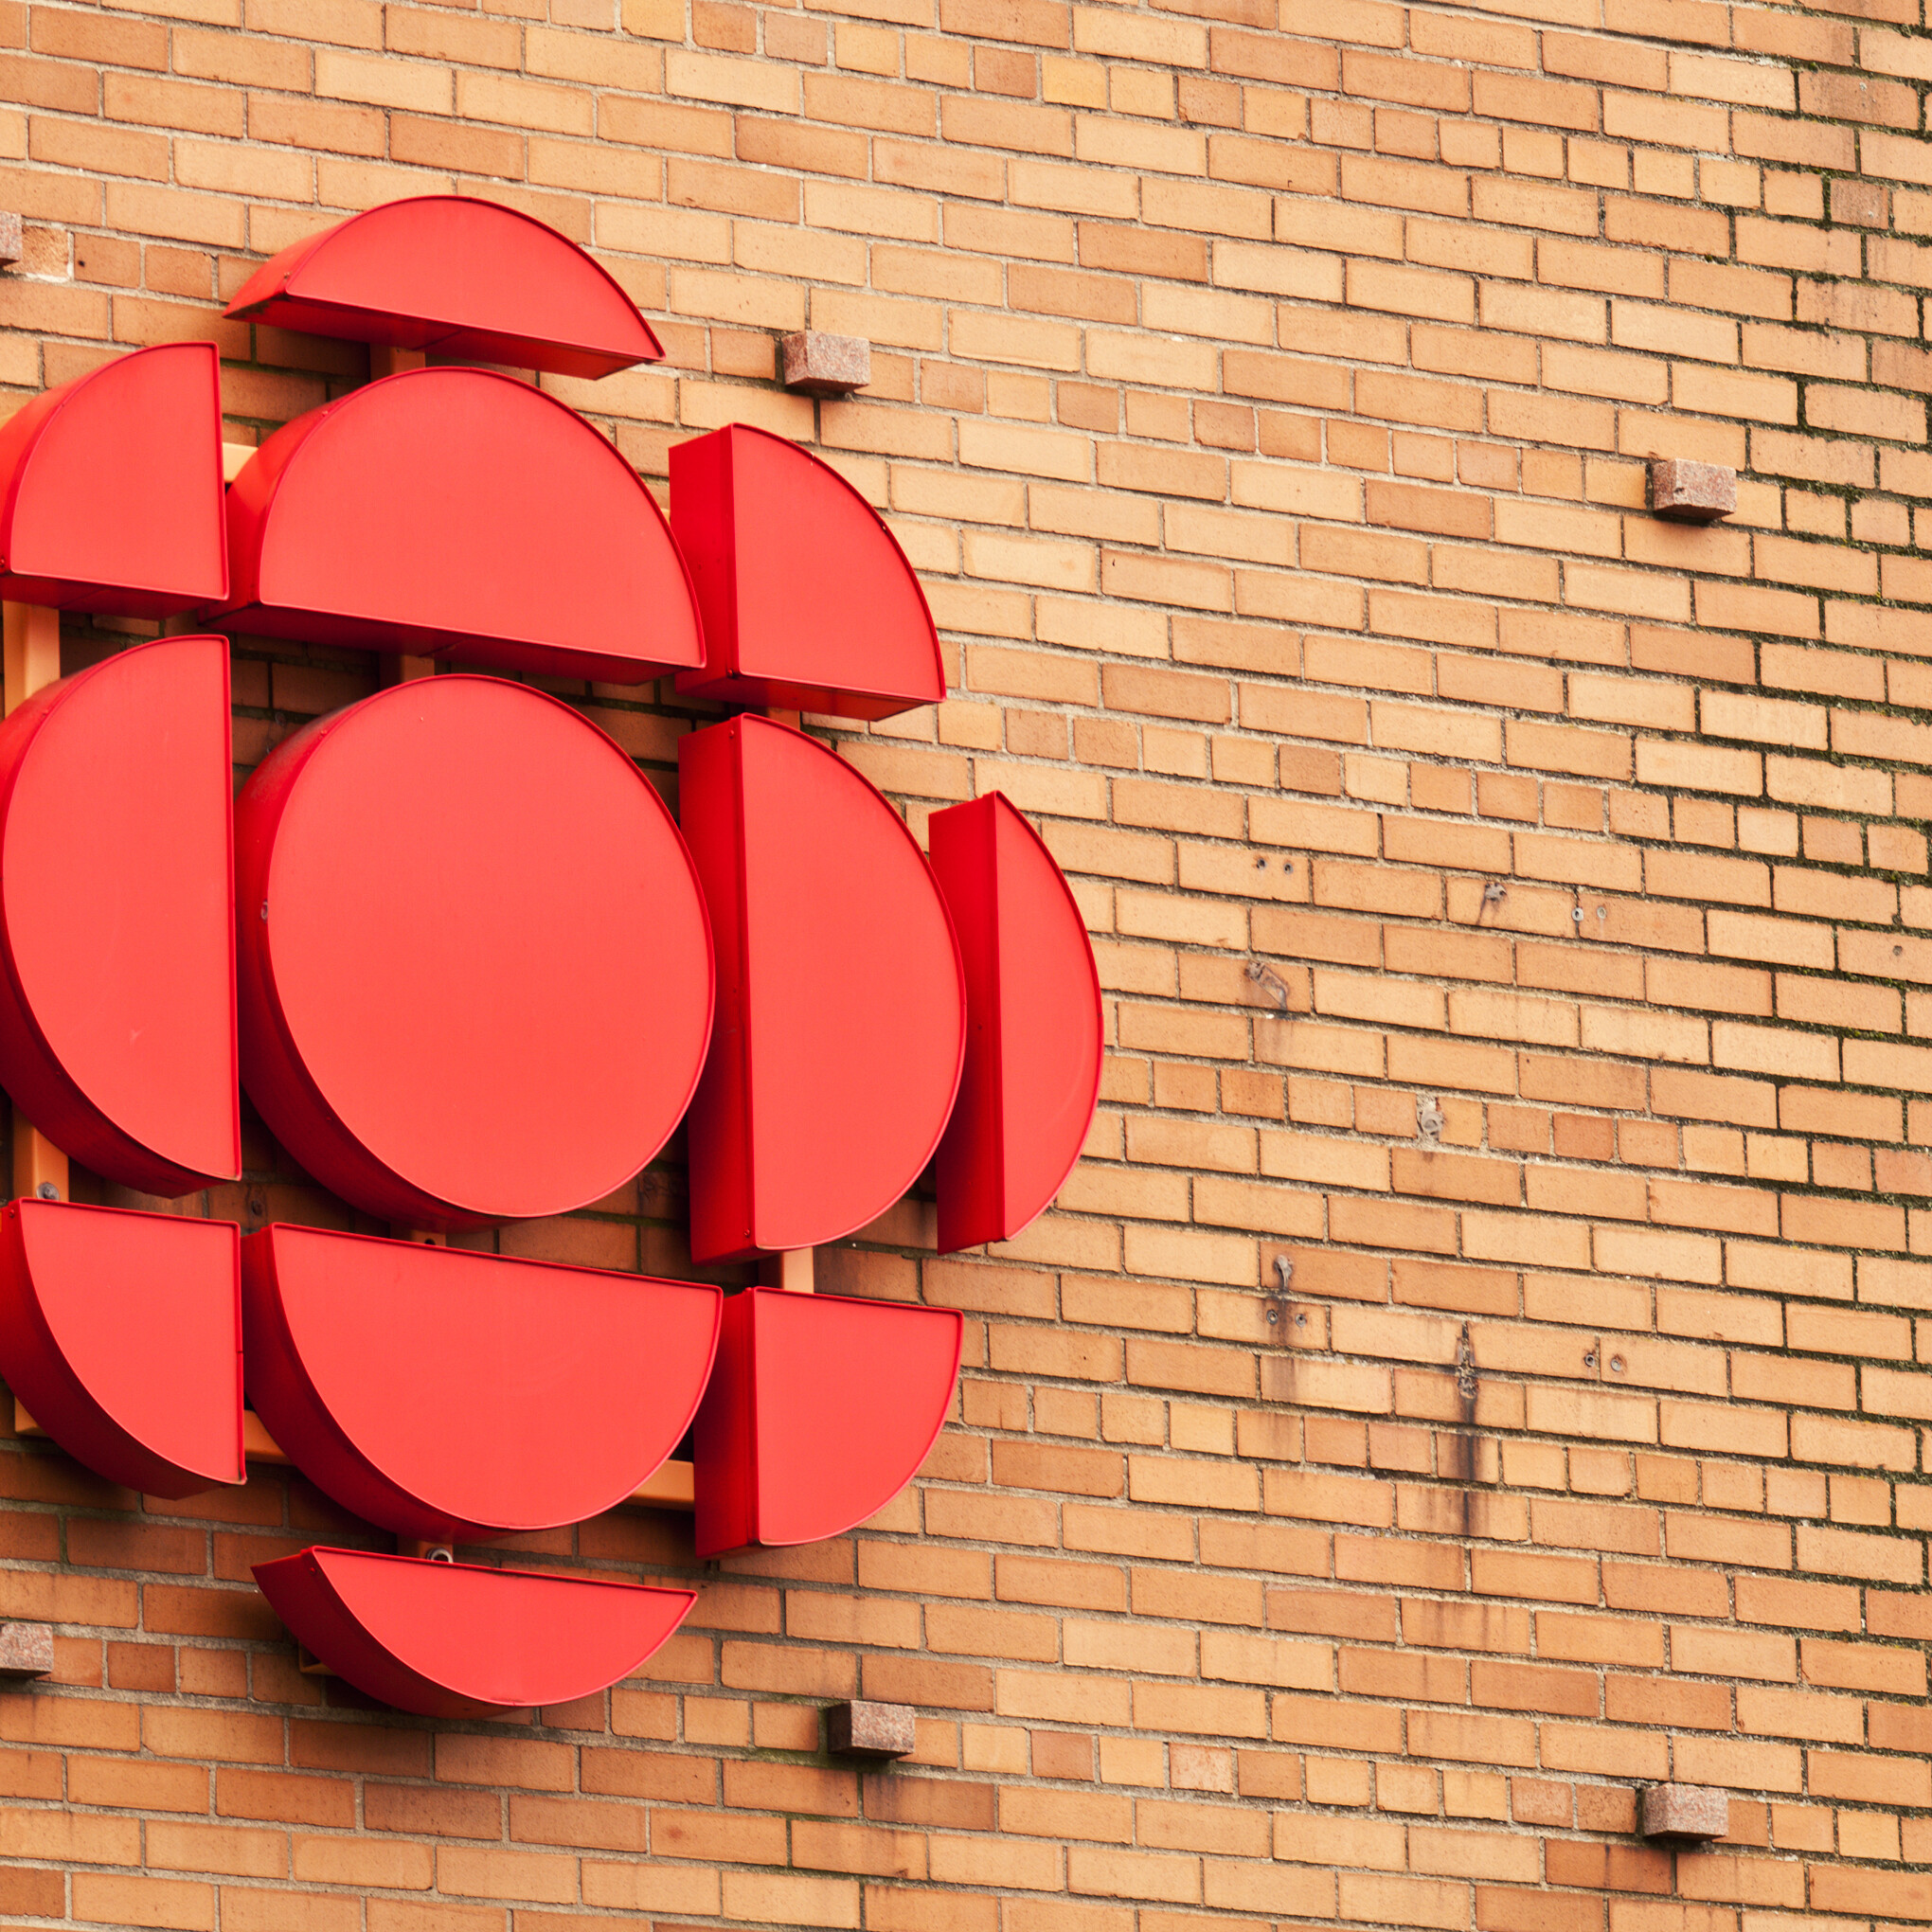 CBC/Radio-Canada